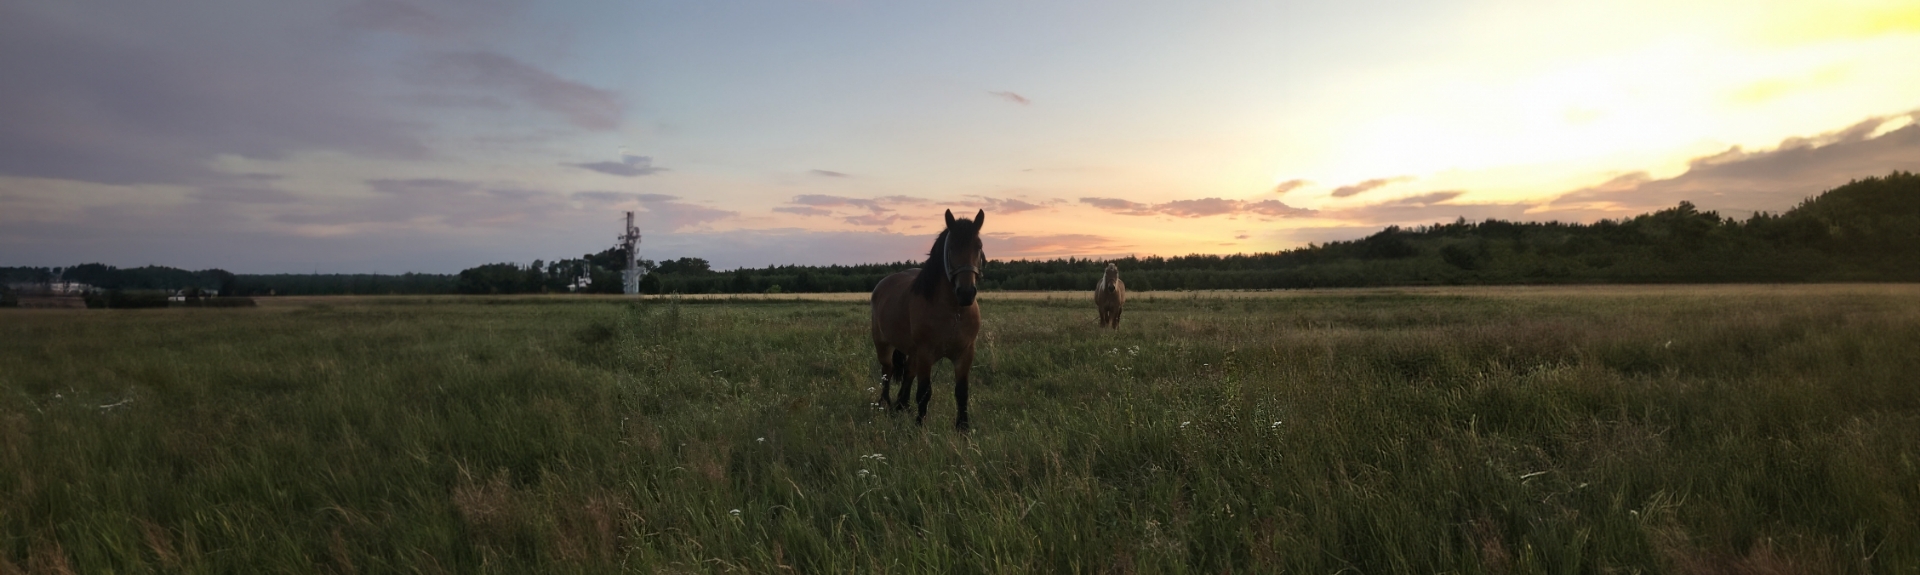 Zdjęcie koni na łące o zachodzie słońca